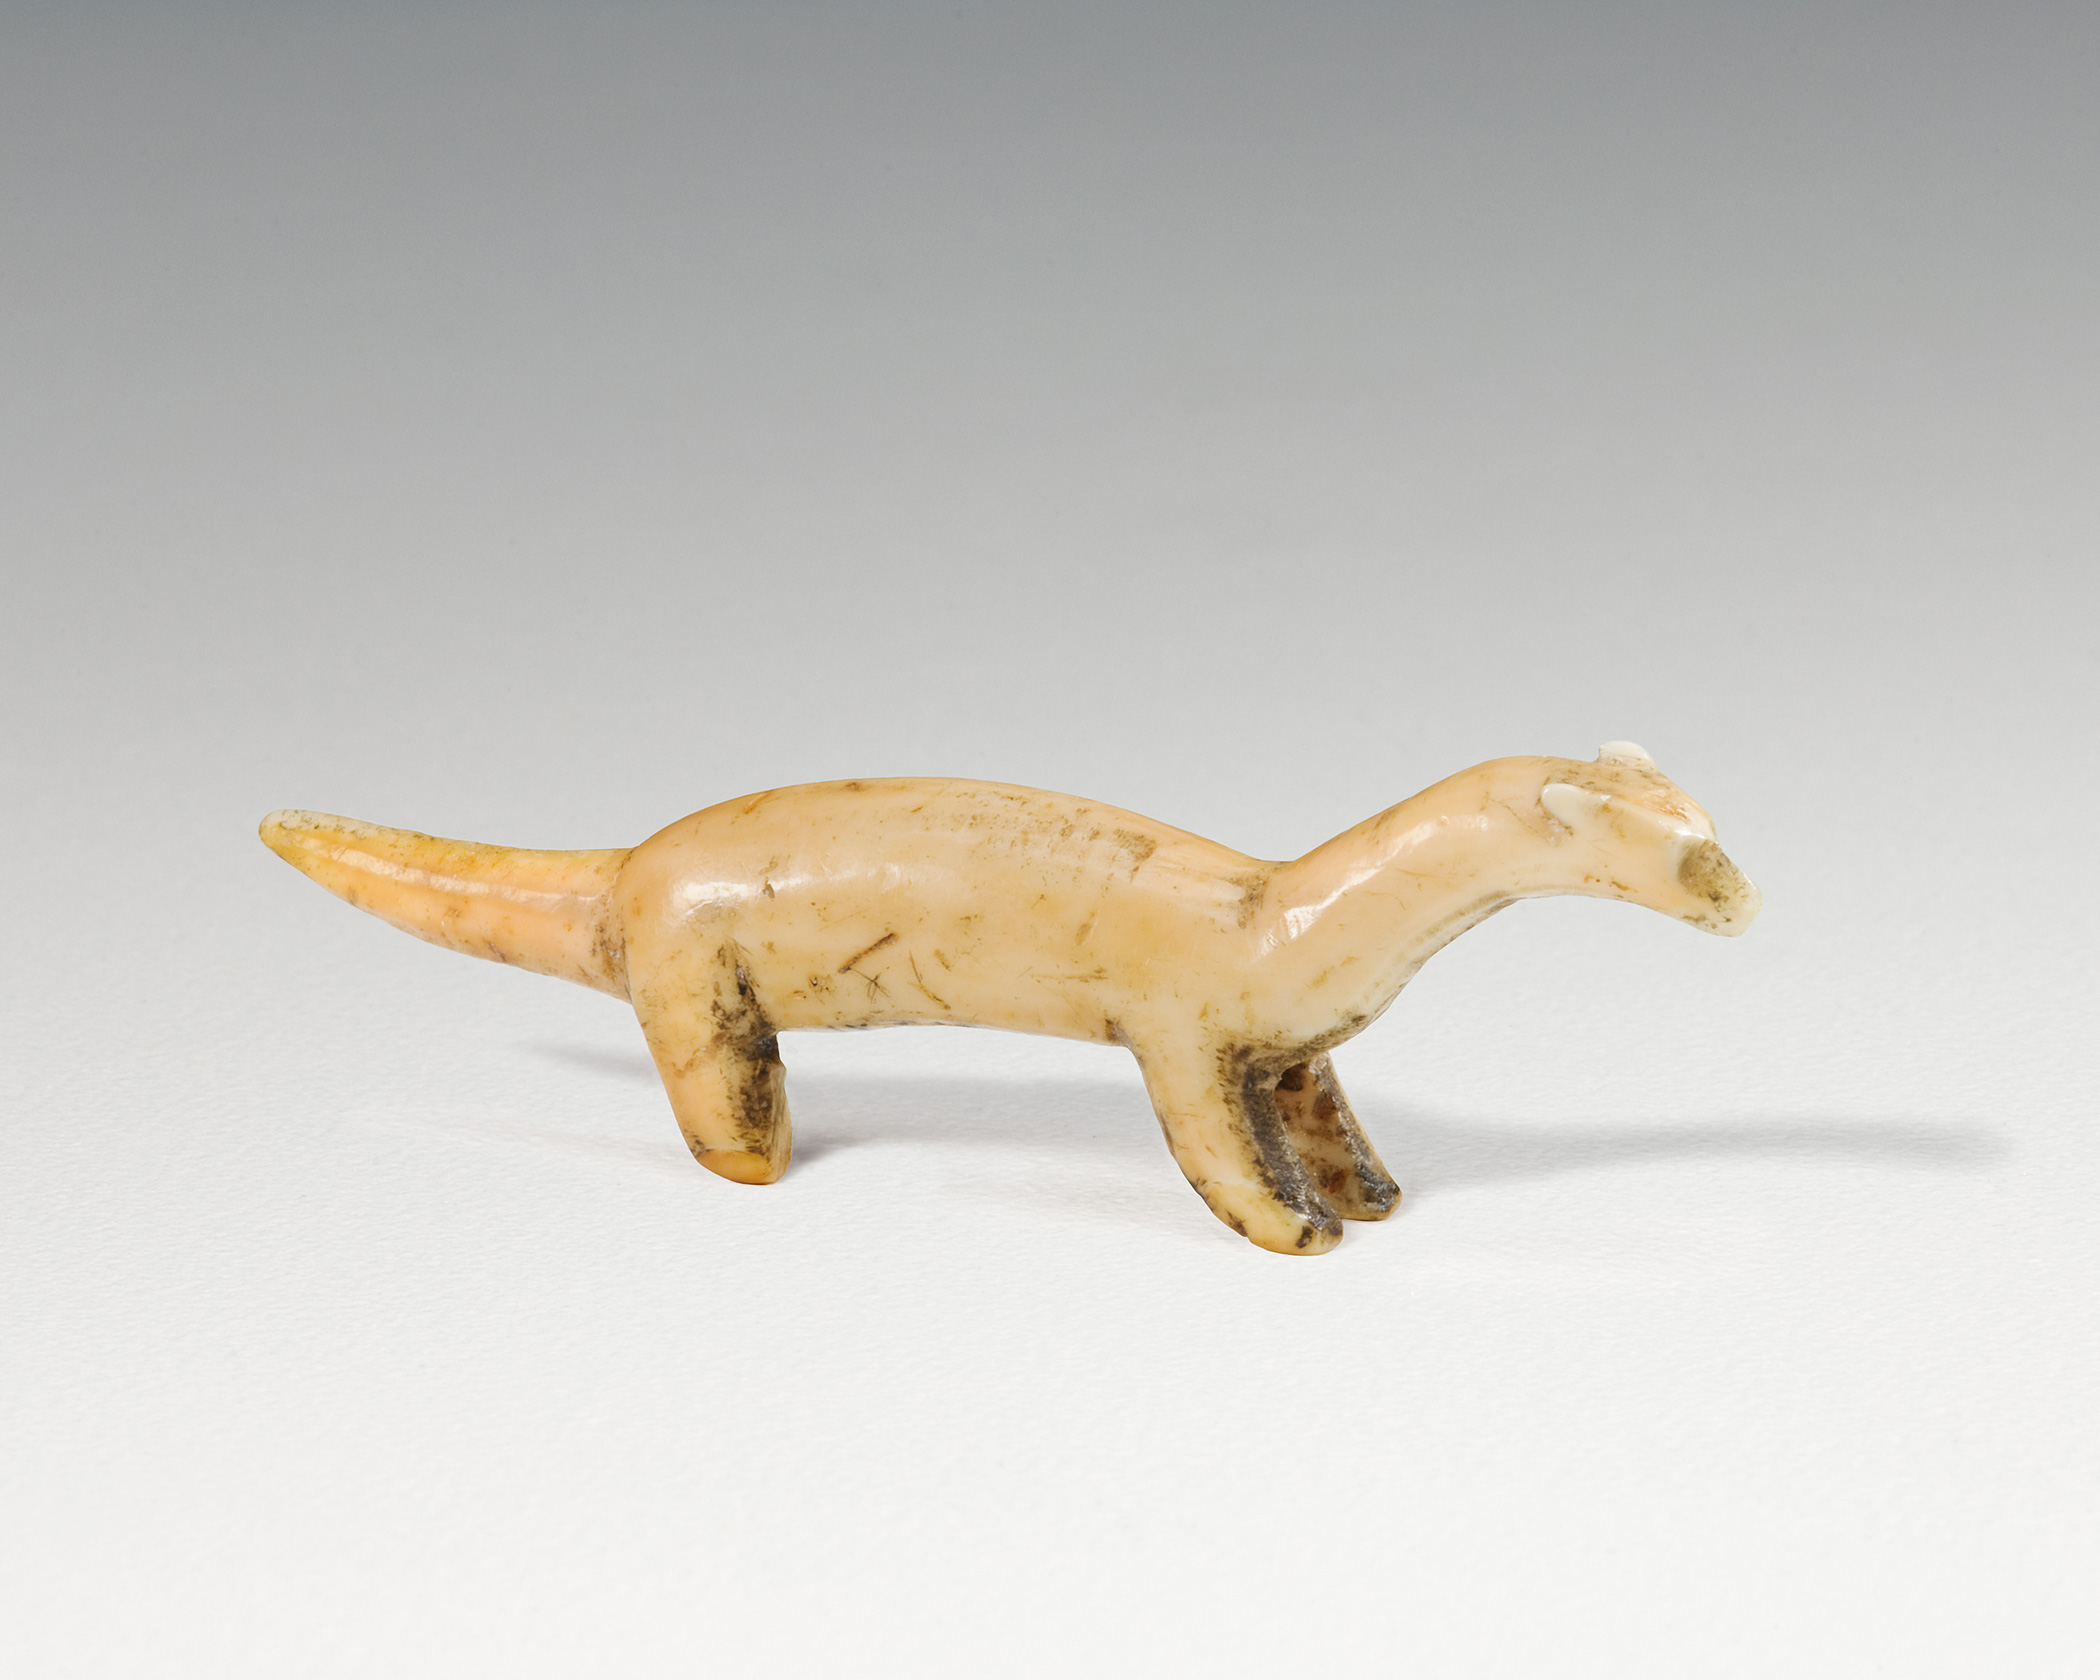 Sculpture en ivoire d’une belette. //Ivory carving of a weasel